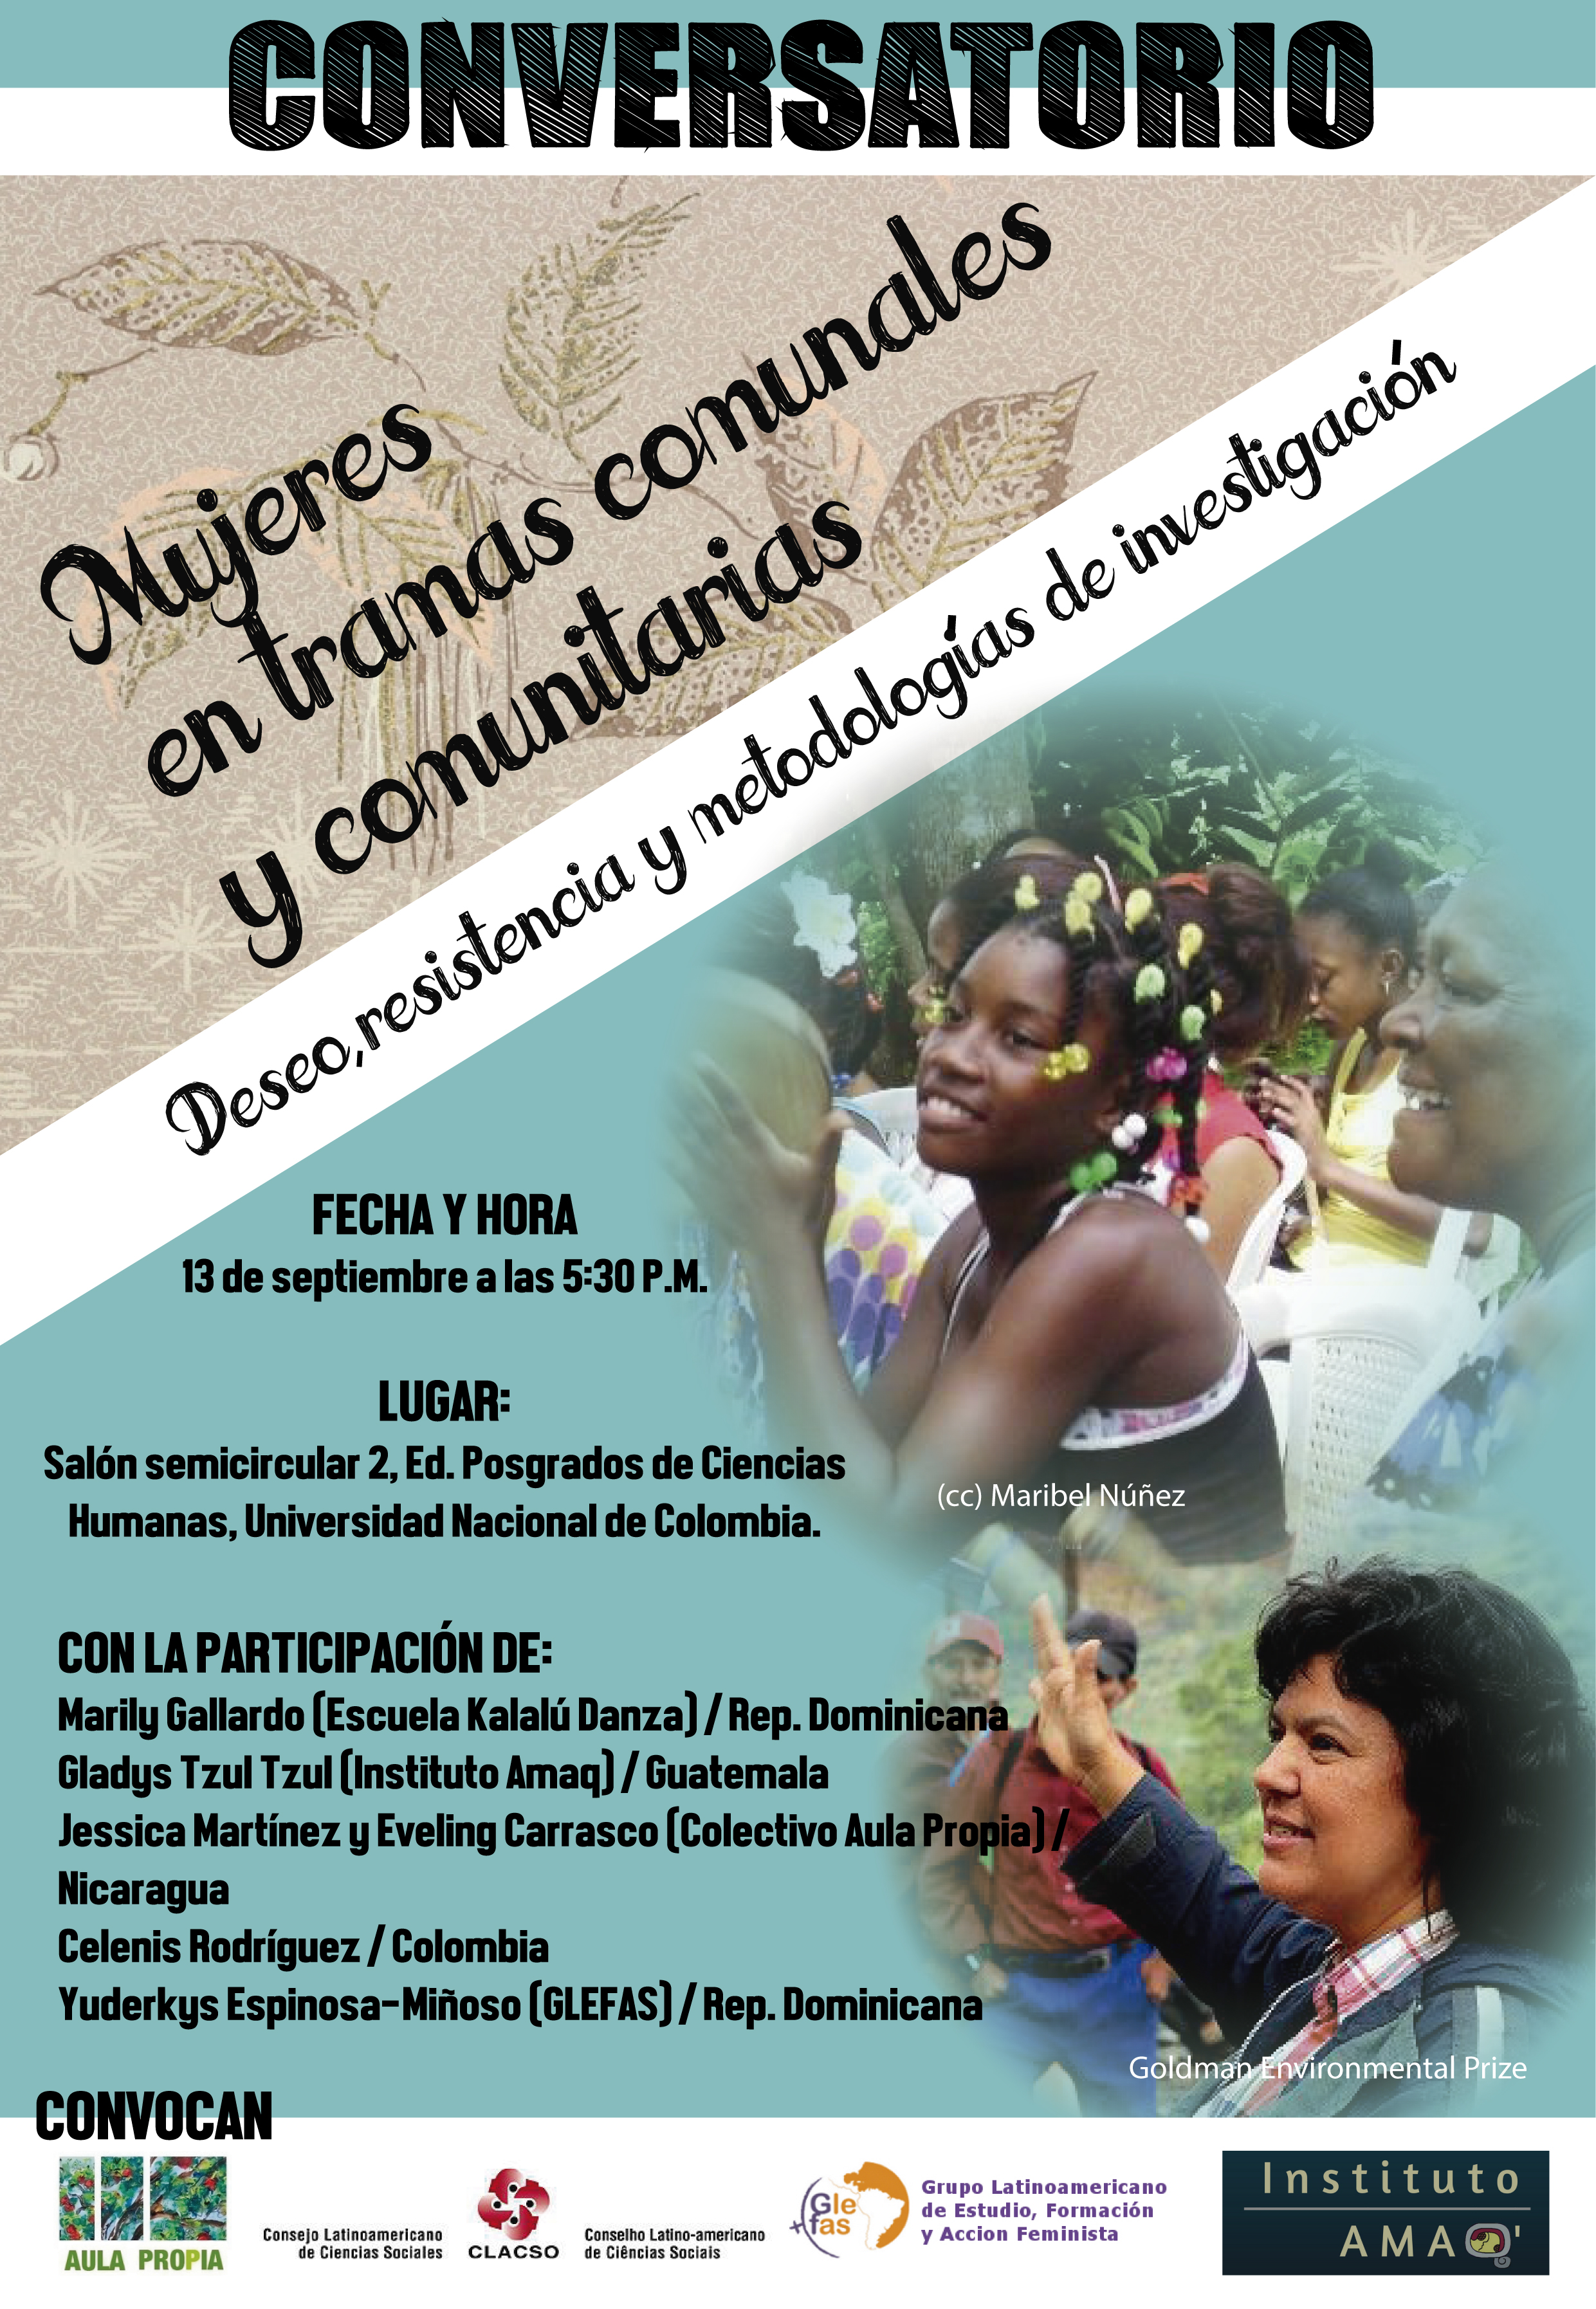 [CONVERSATORIO] Mujeres en tramas comunales y comunitarias